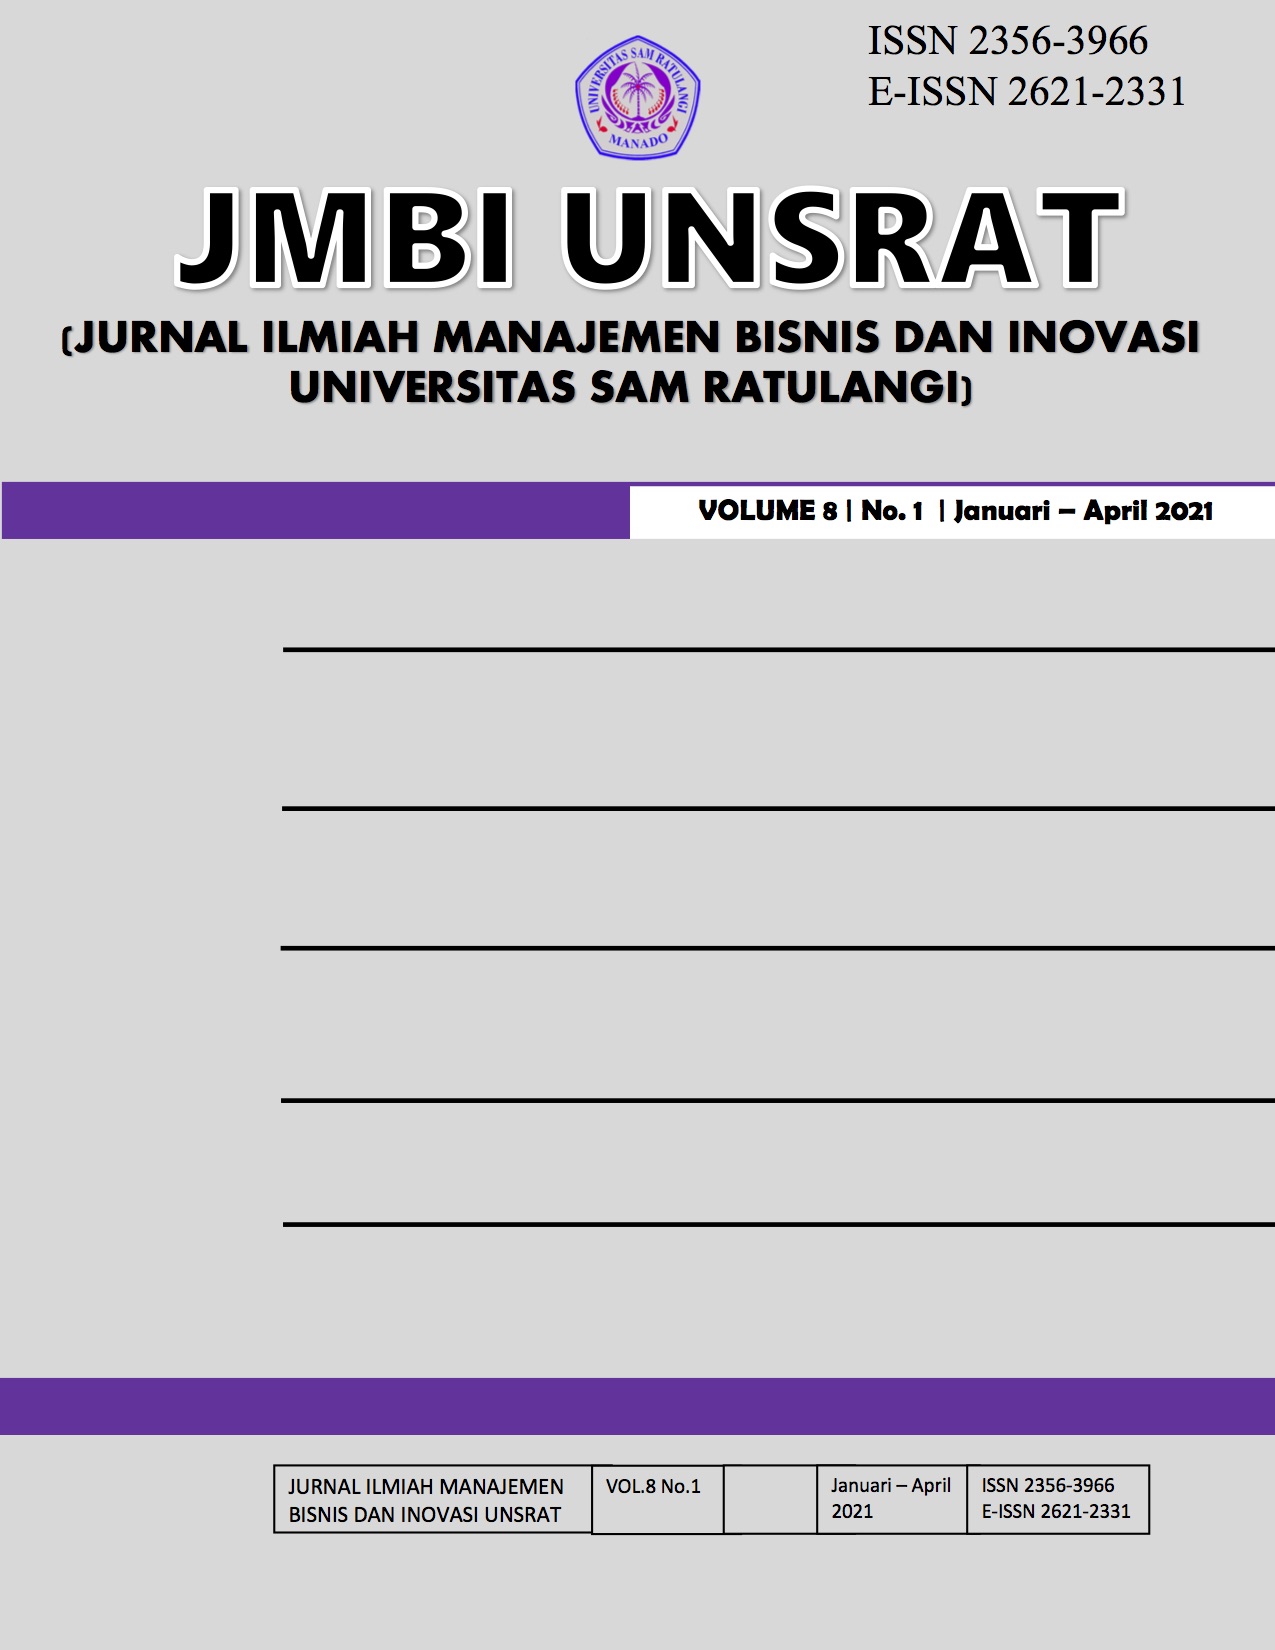 					View Vol. 8 No. 1 (2021): JMBI UNSRAT Volume 8 Nomor 1
				